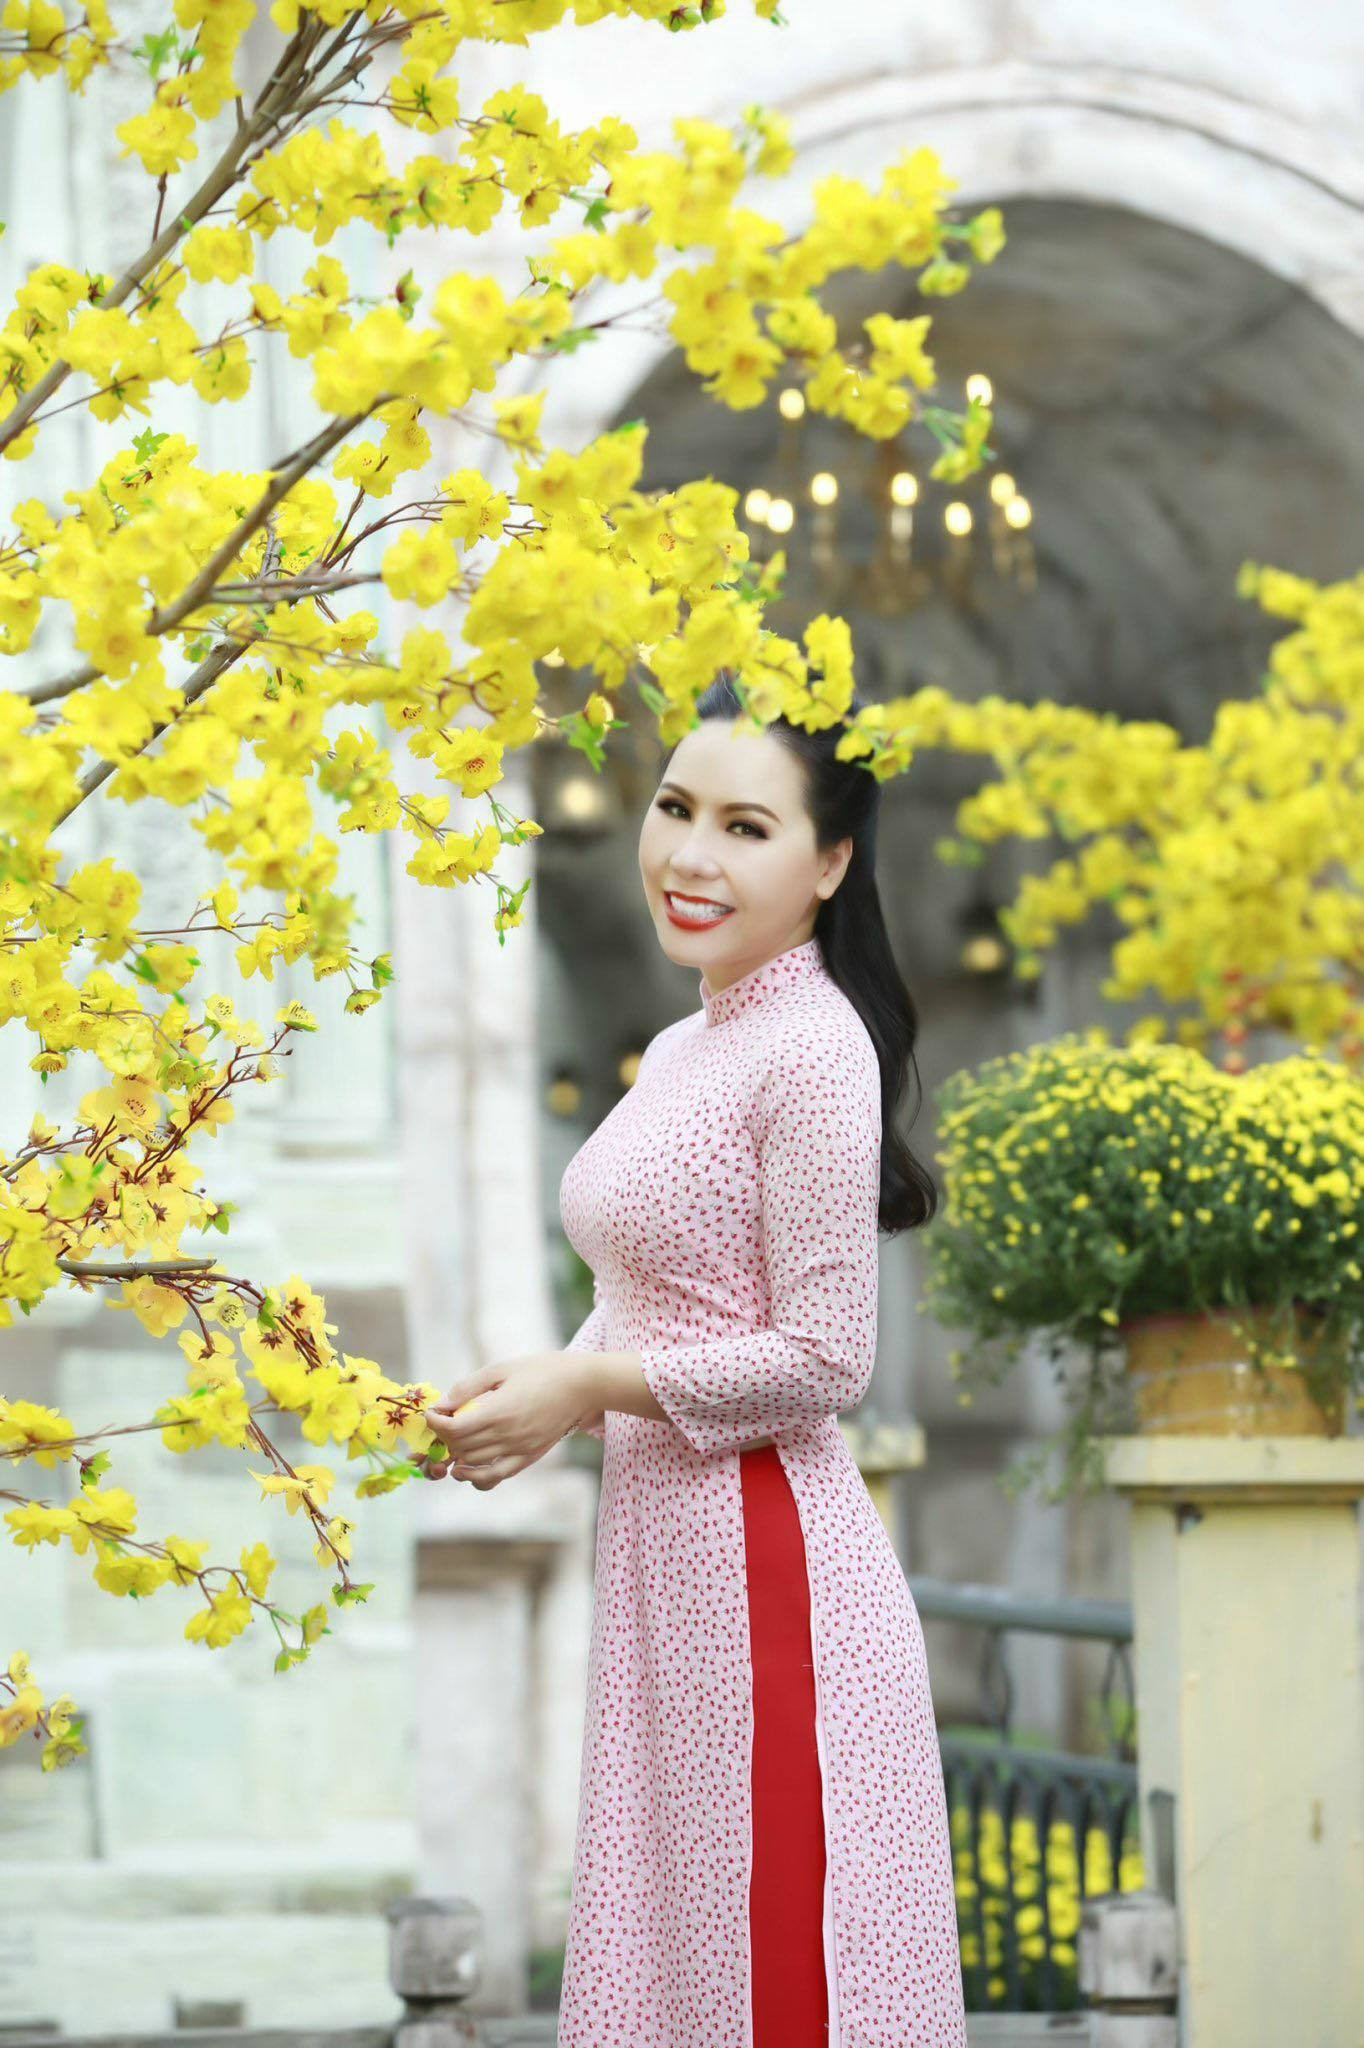 Tà áo dài Kim Chi mang trong mình đậm chất truyền thống của Việt Nam, cùng với sự thanh lịch, quý phái và trang nhã. Hình ảnh tà áo dài Kim Chi sẽ mang lại cho bạn một khung cảnh lãng mạn và hoài cổ, cũng như giúp tìm kiếm các ý tưởng cho trang phục trong các dịp đặc biệt. Hãy thưởng ngoạn và tận hưởng trọn vẹn sức hút của tà áo dài Kim Chi!